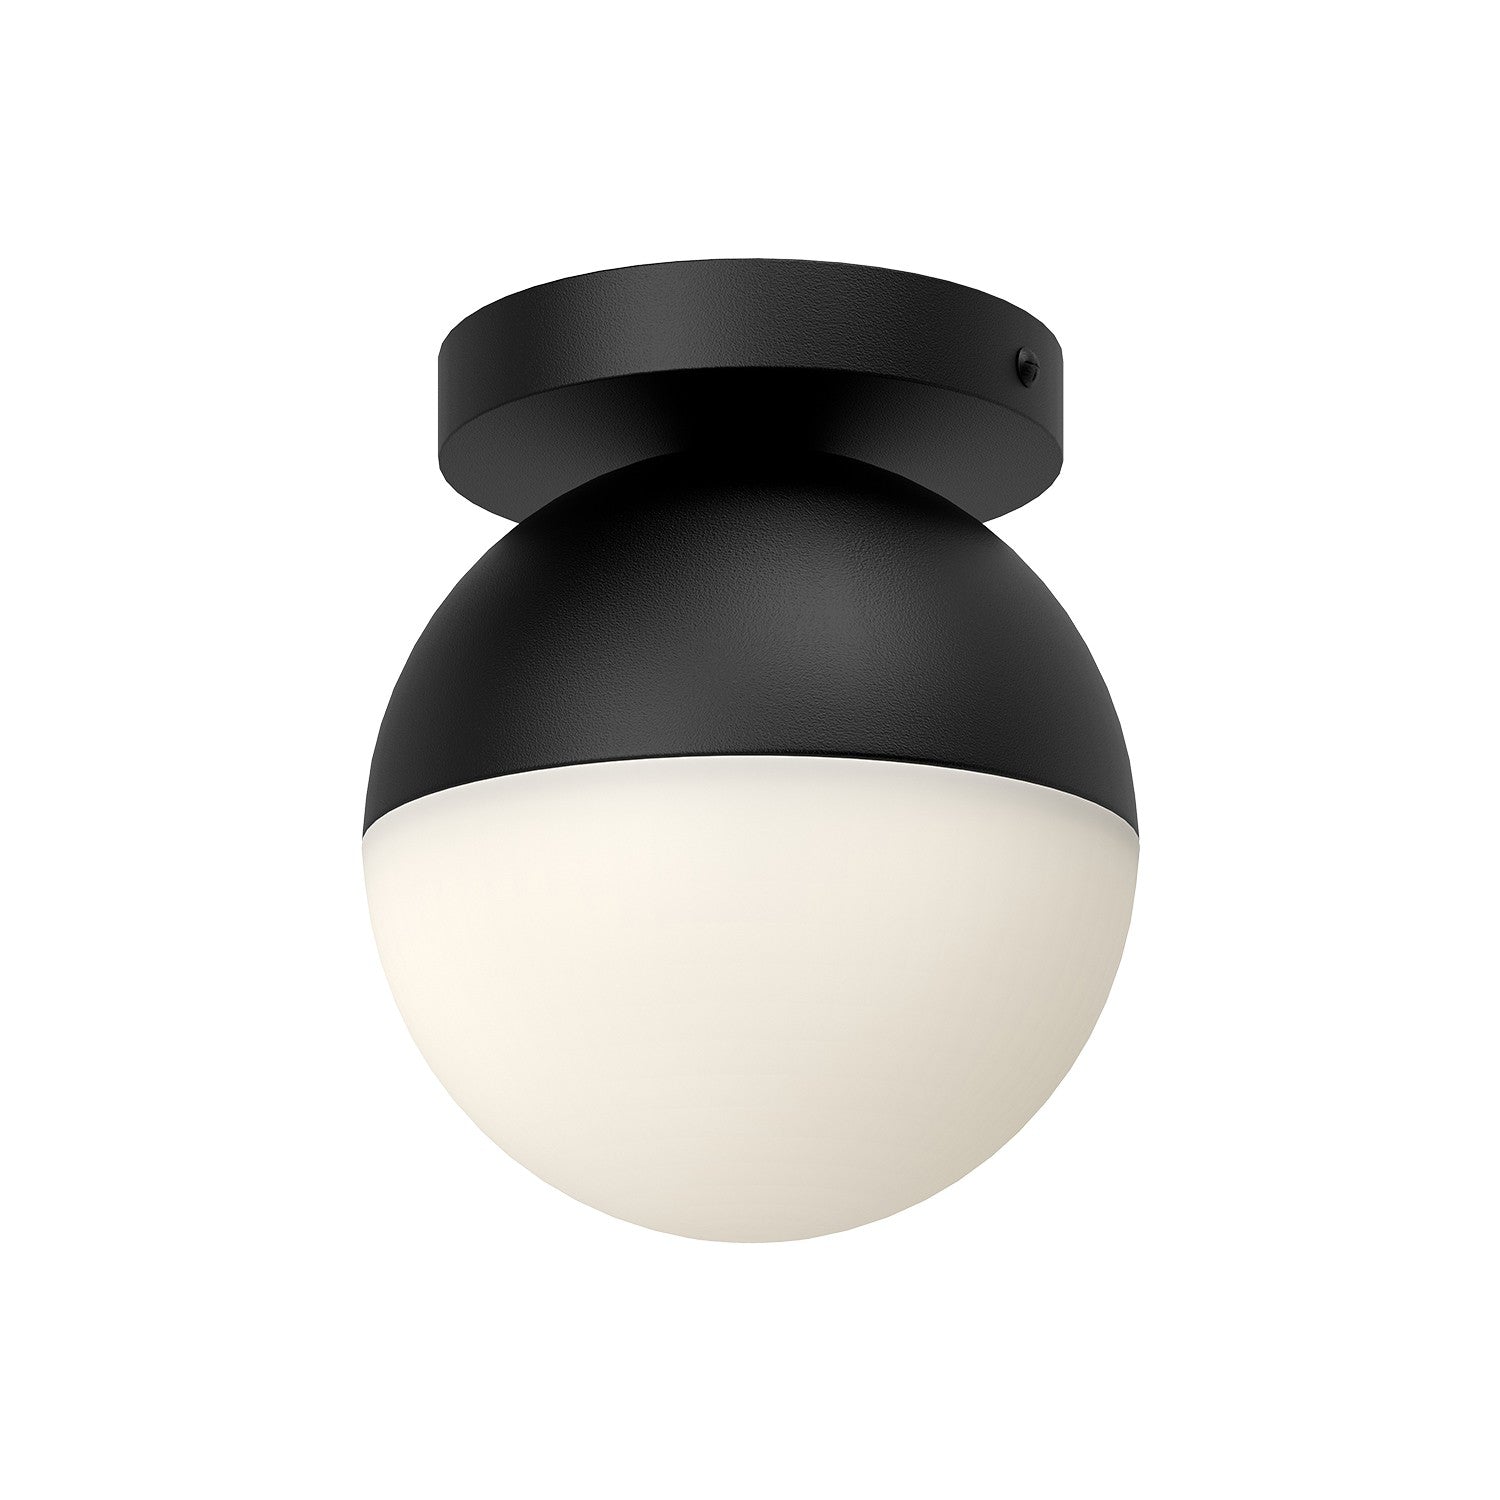 Kuzco Lighting - FM58306-BK/OP - One Light Flush Mount - Monae - Black/Opal Glass